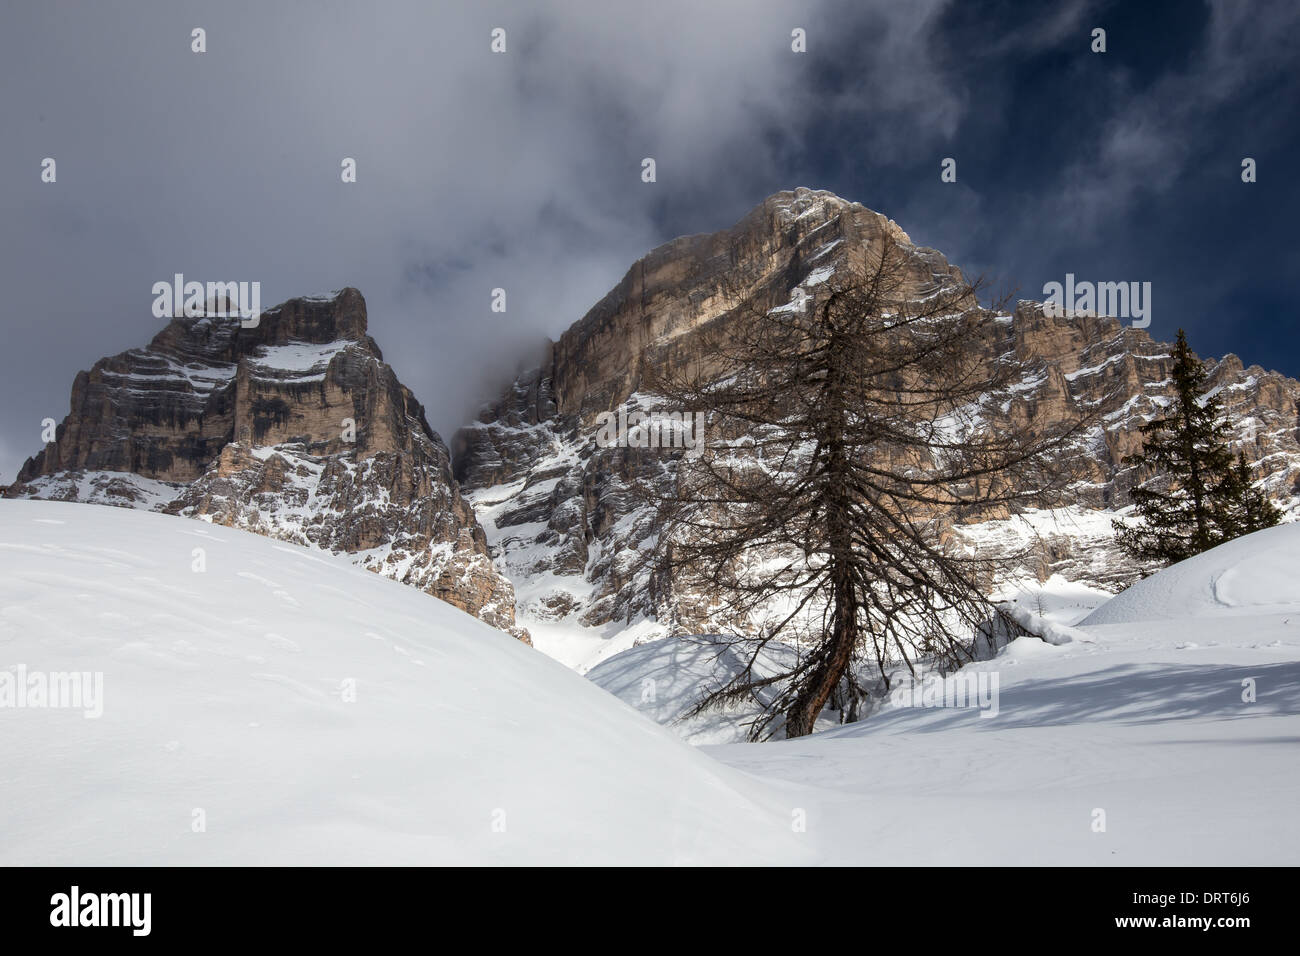 Monte Pelmo mountain. Winter season, snow. The Dolomites. Italian Alps. Stock Photo